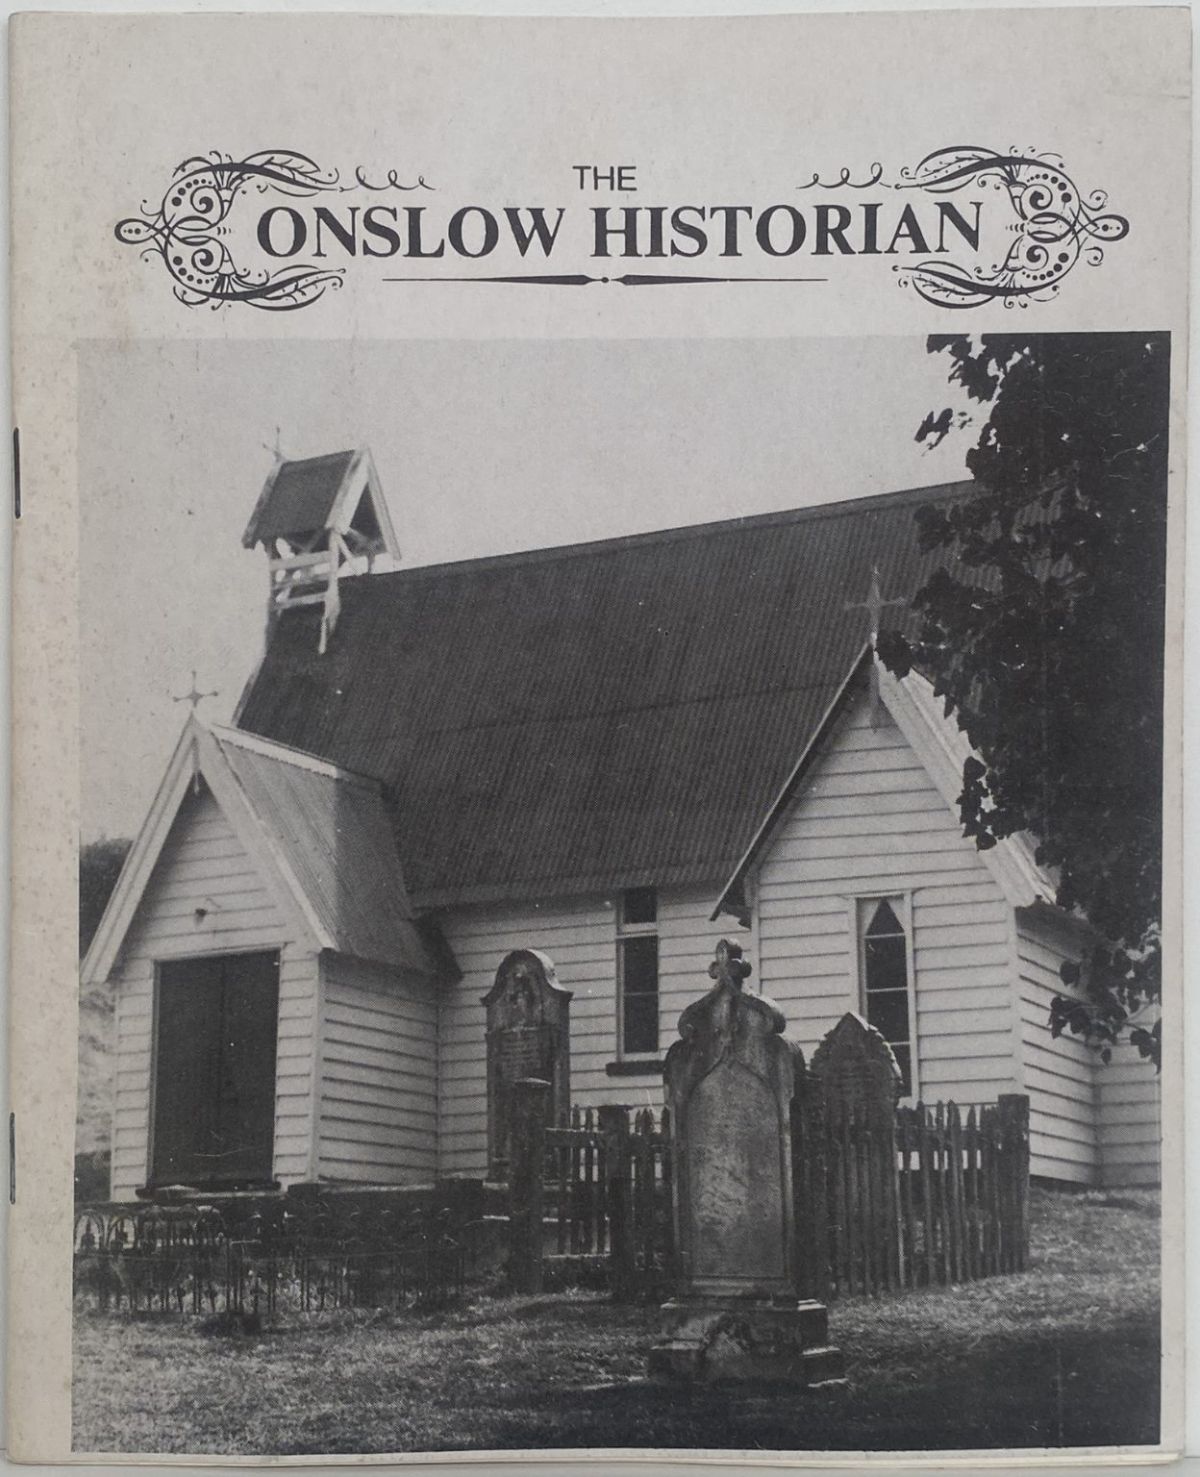 THE ONSLOW HISTORIAN: Vol. 5 - No. 2, 1975